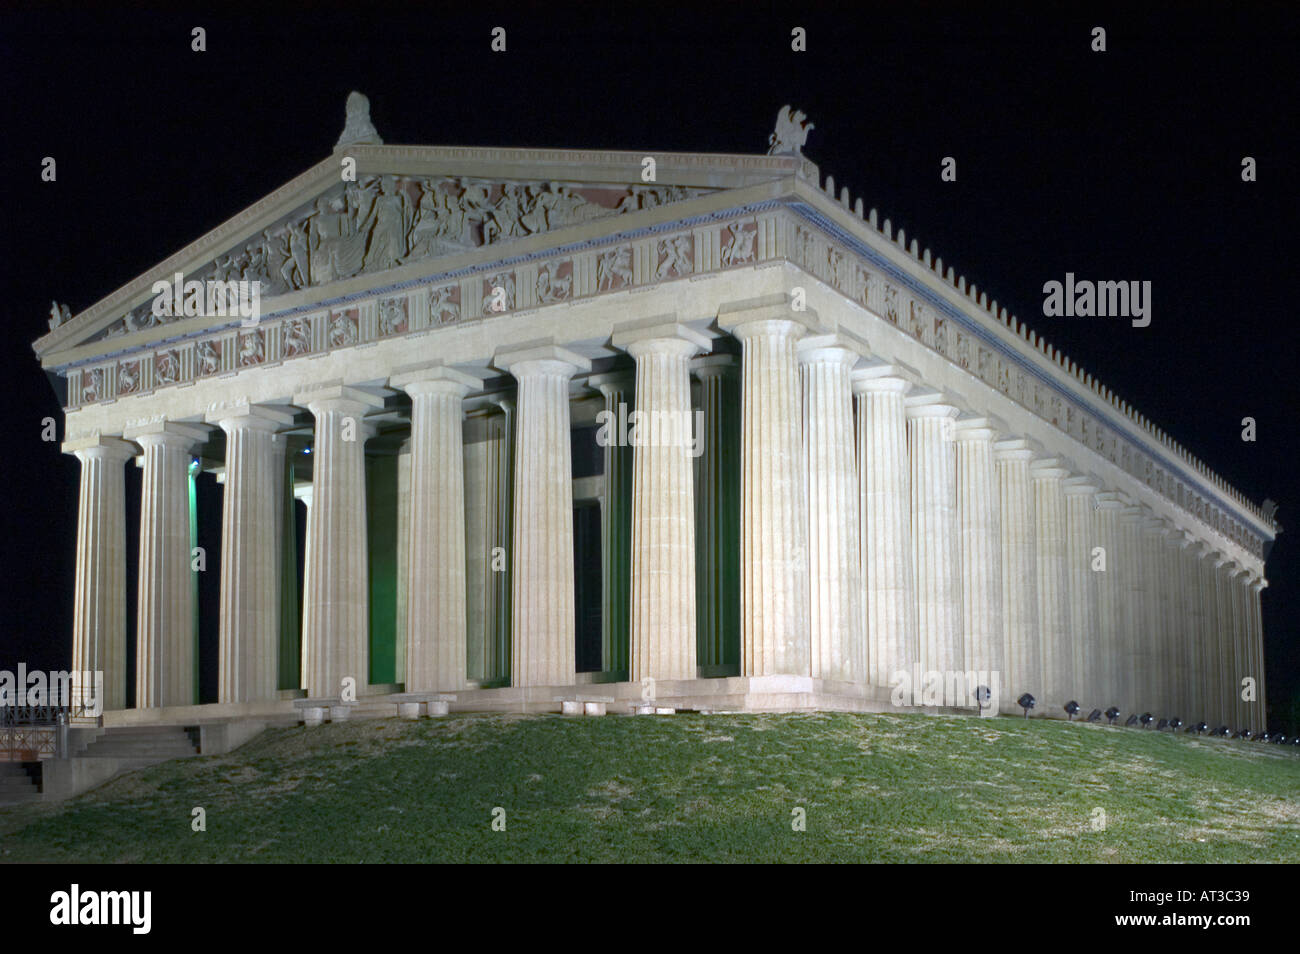 Modèle du Parthénon à Athènes Grèce situé dans le Centennial Park à Nashville, au Tennessee Banque D'Images